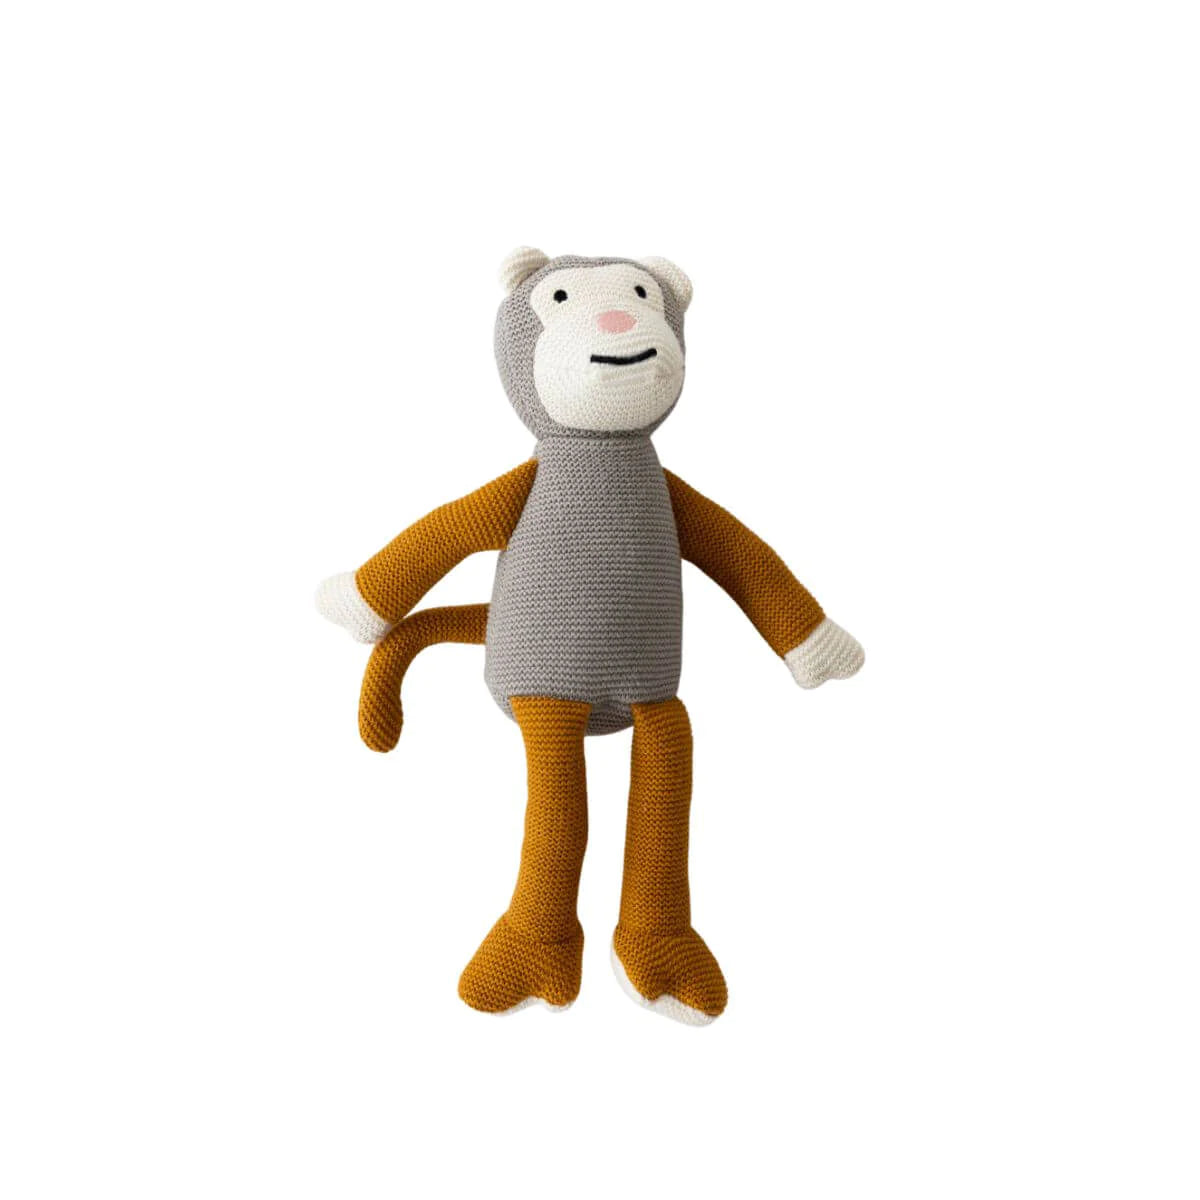 Max Monkey Toy